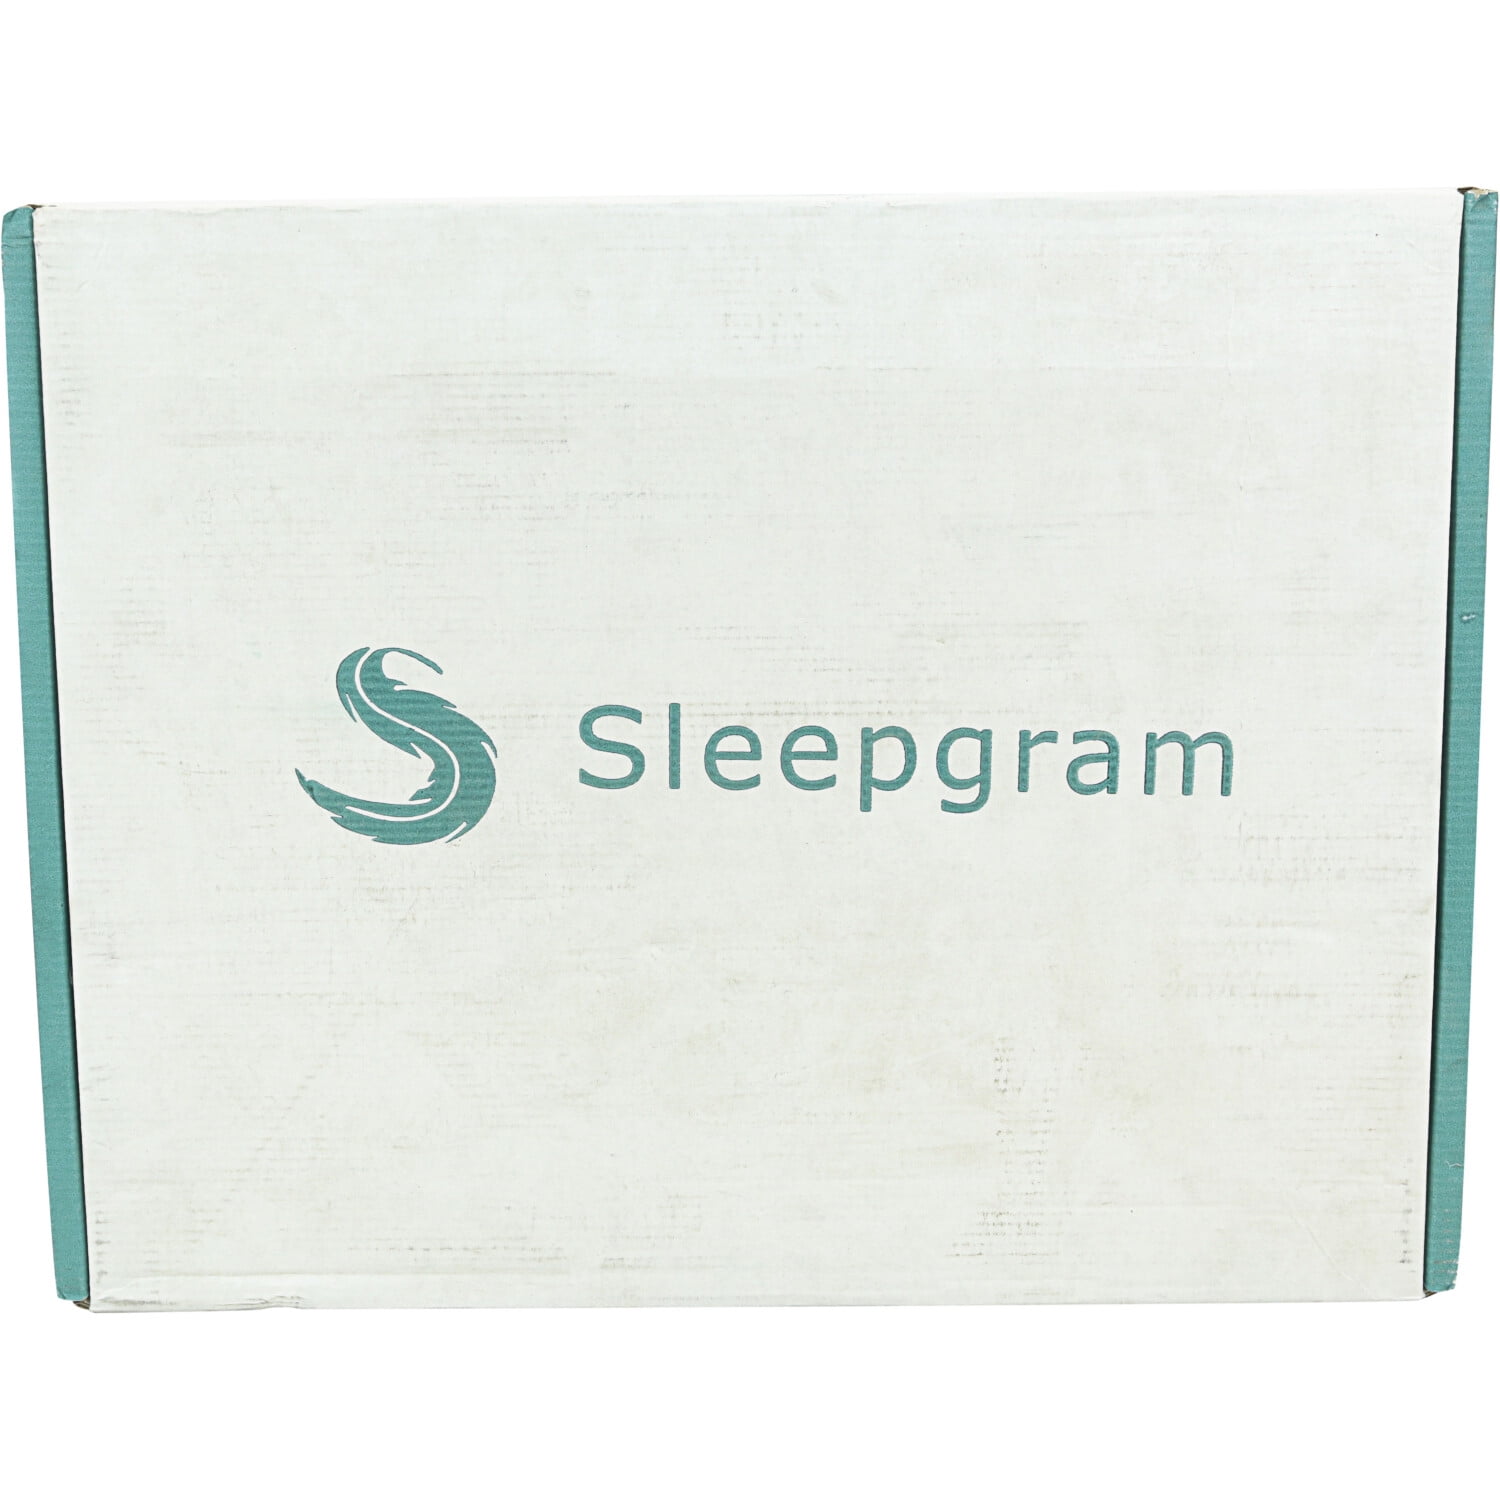 sleepgram